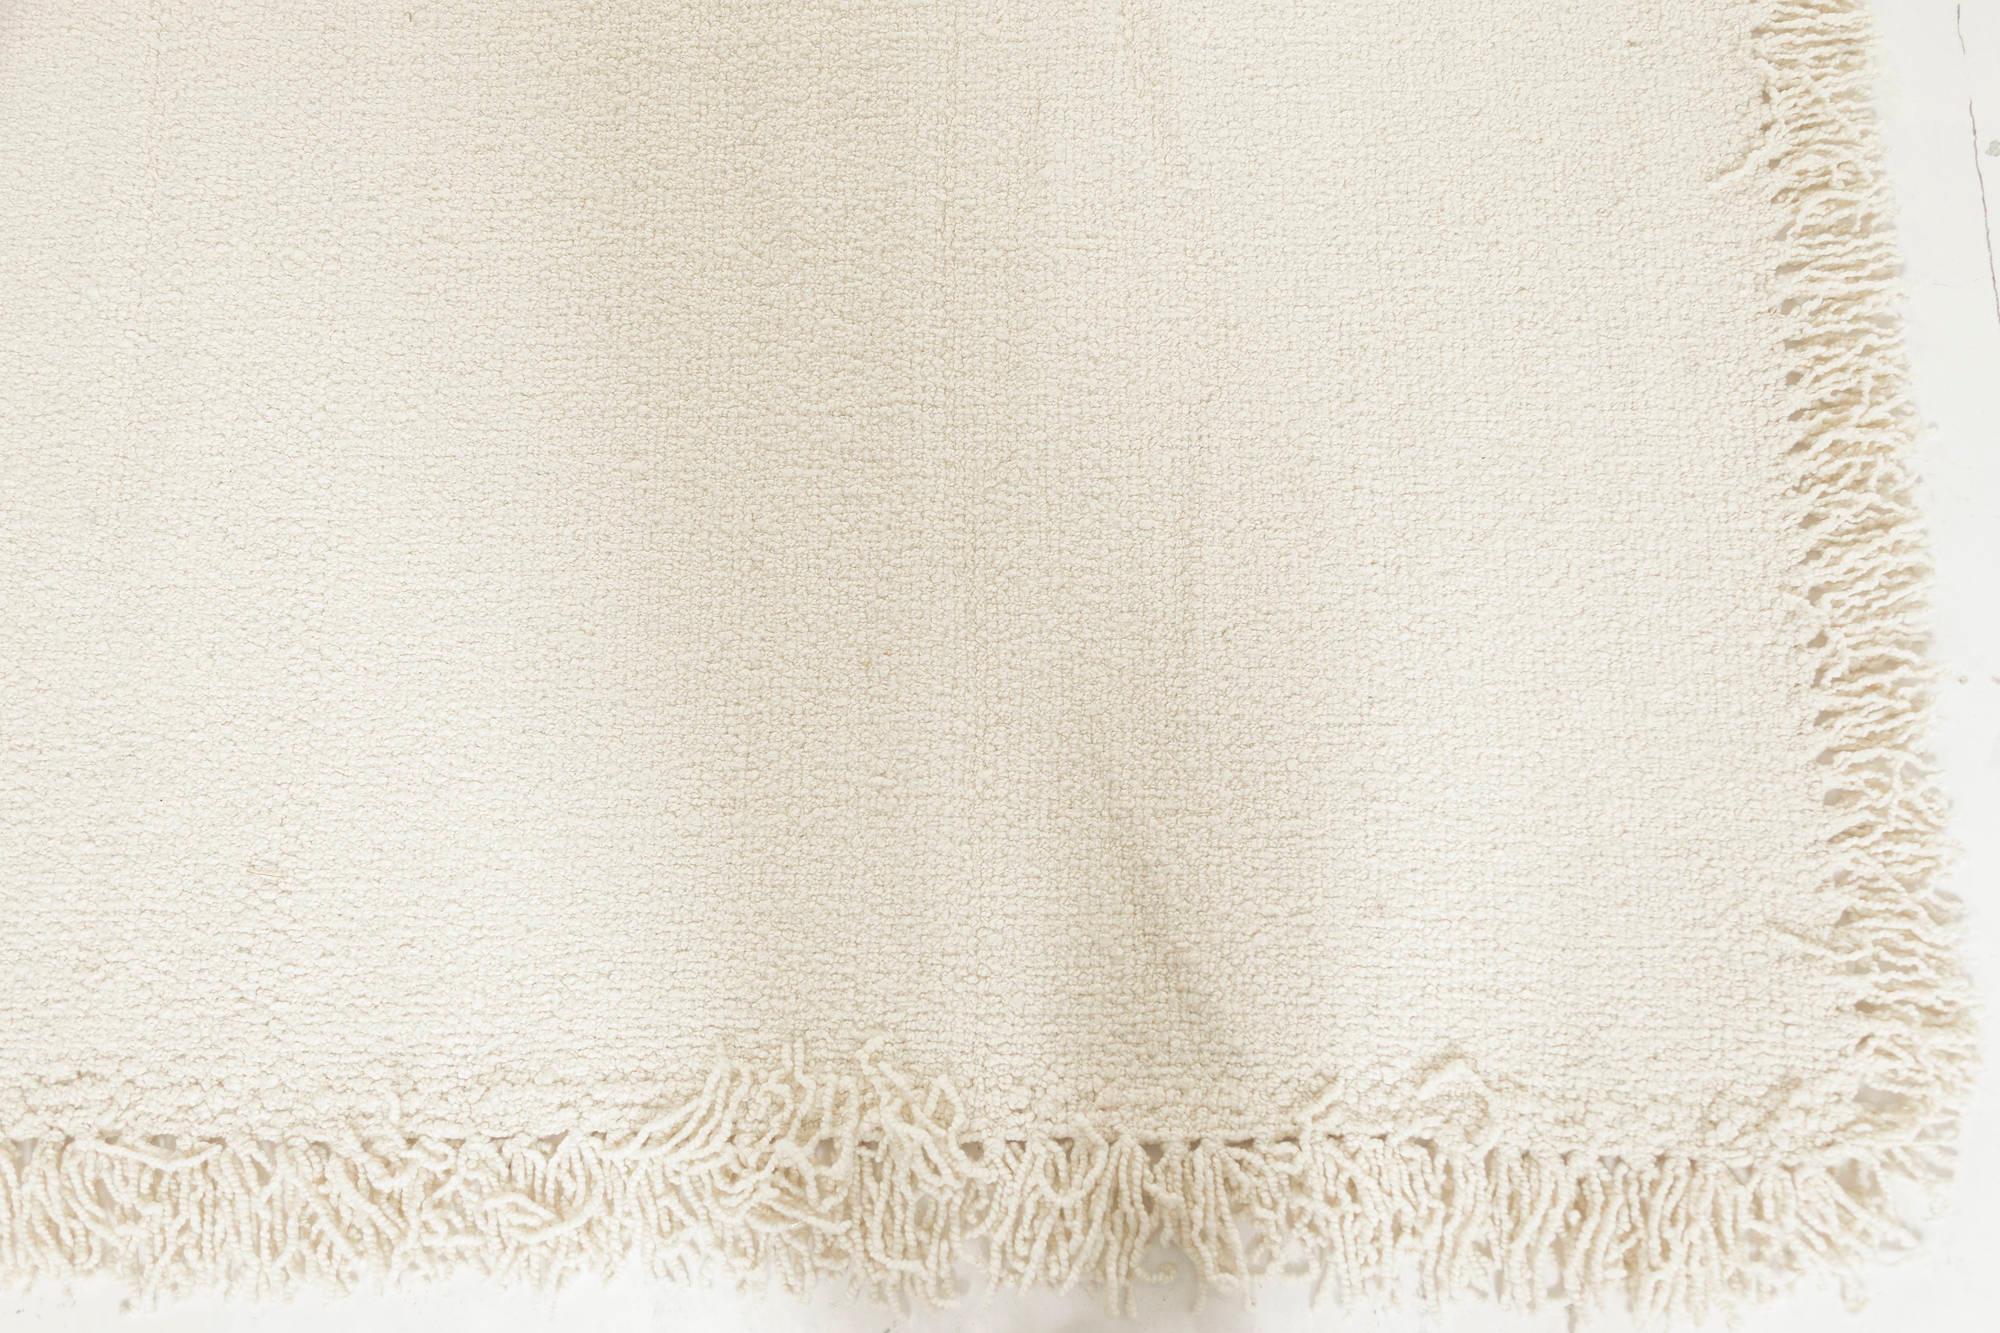 Contemporary beige flat weave rug by Doris Leslie Blau.
Size: 9'10